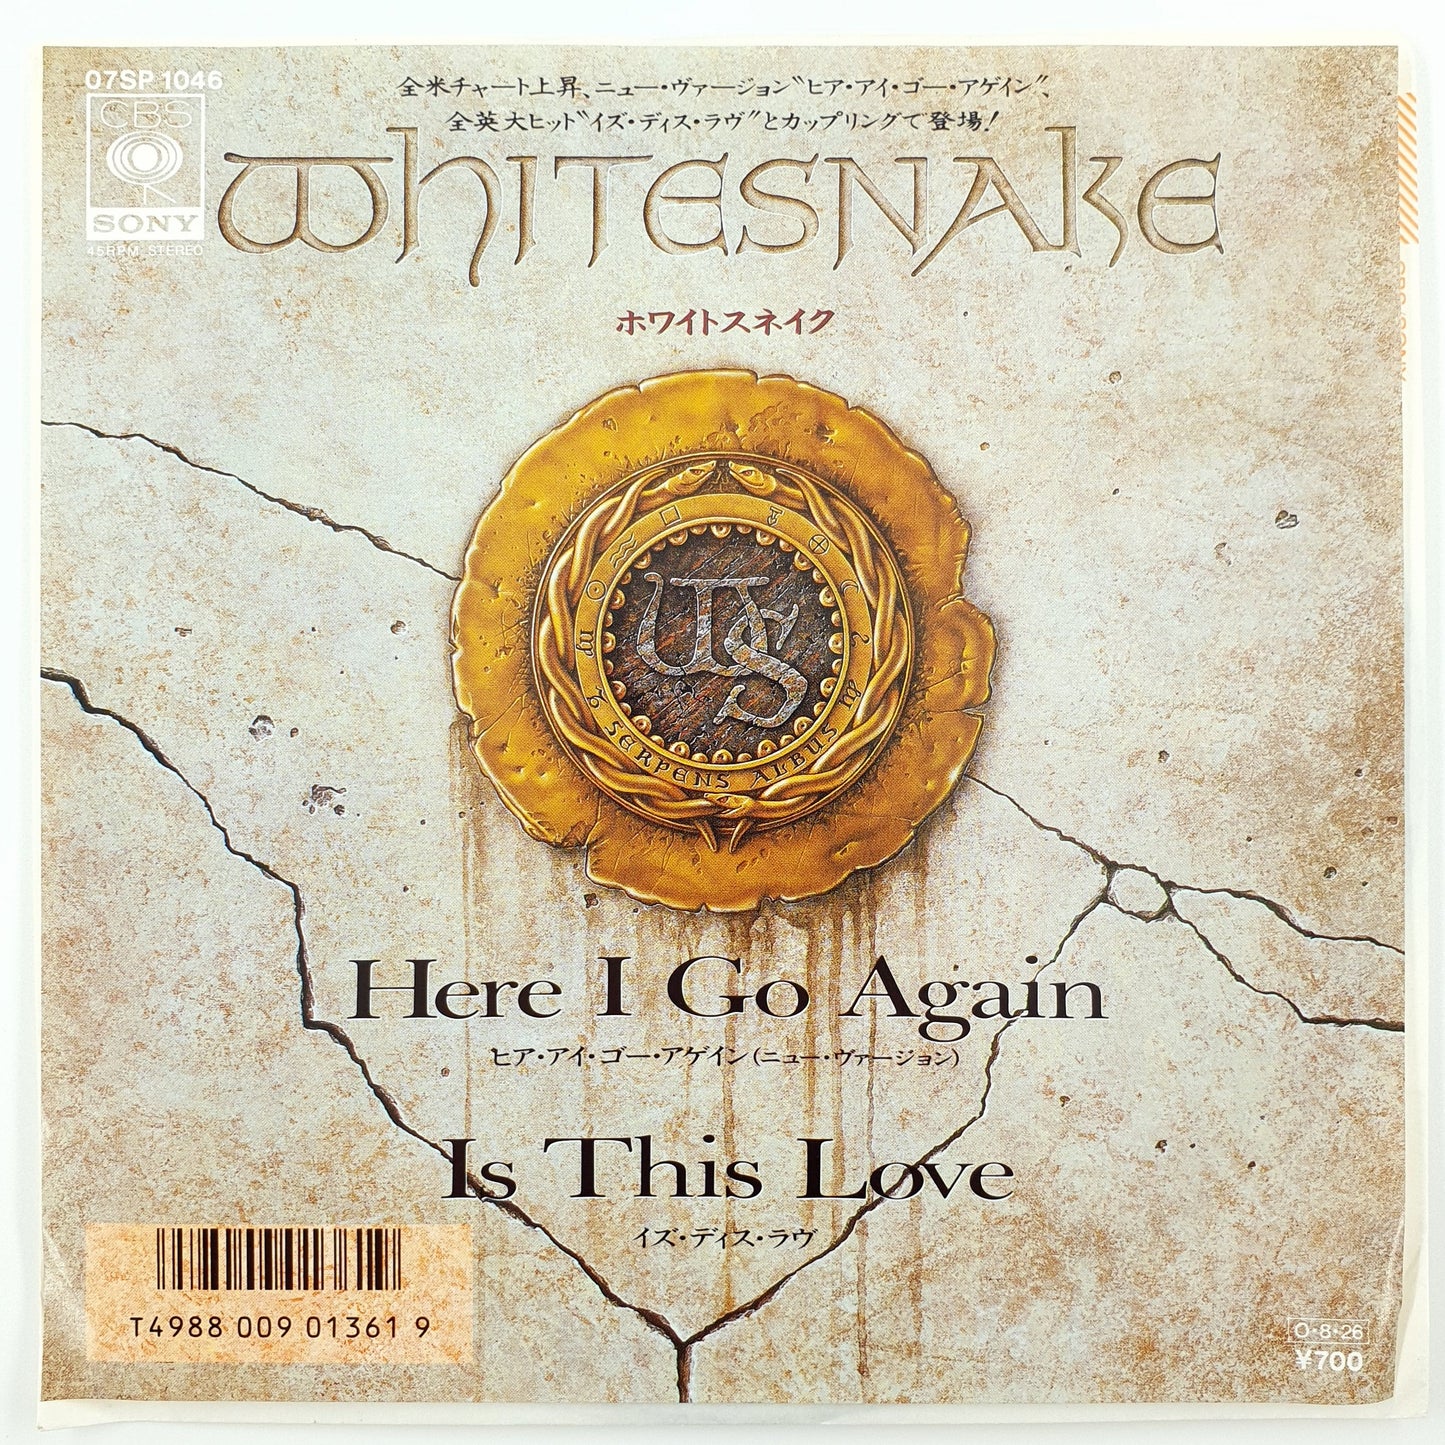 Whitesnake – Here I Go Again / Is This Love